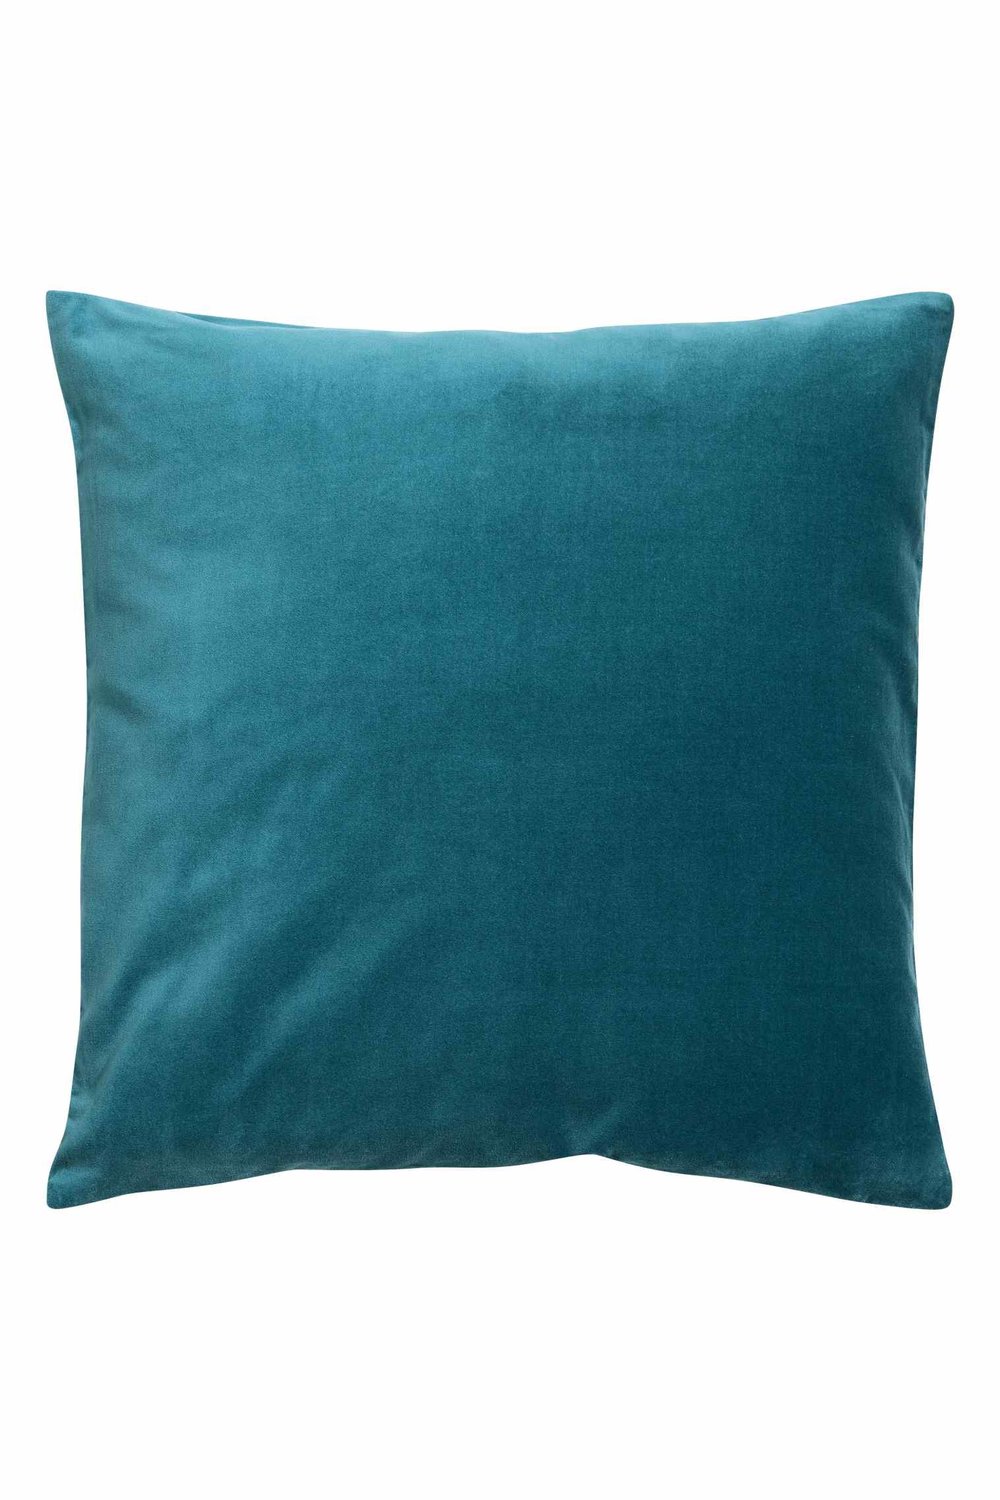 Velvet cushion cover 20in., $13